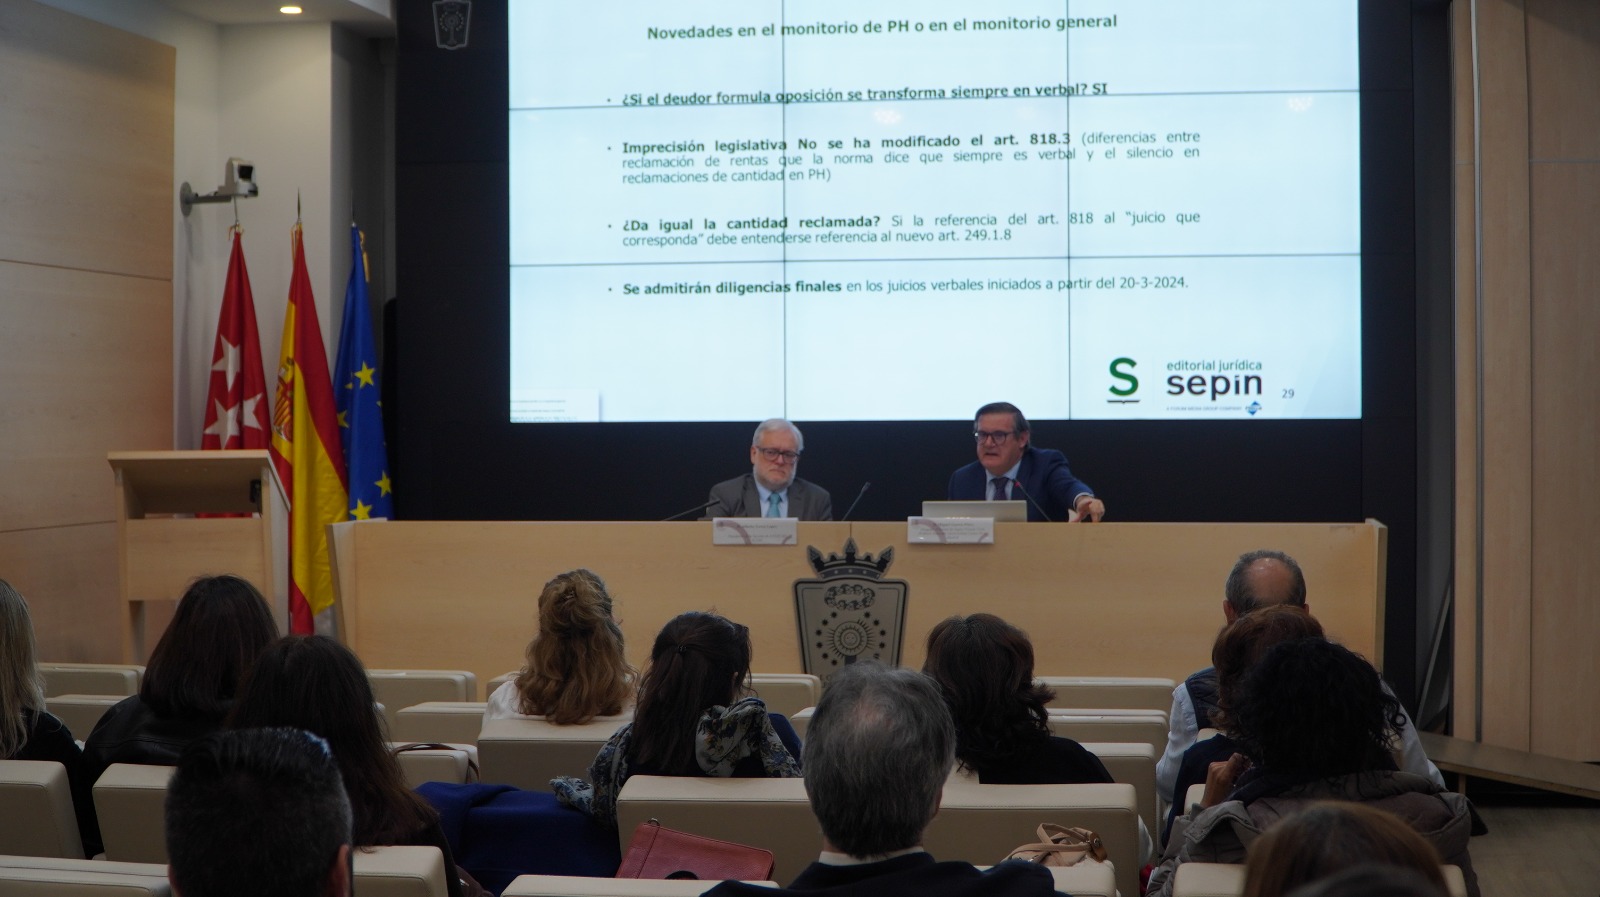 El ICAM aborda las nuevas reformas procesales y los juicios en materia de Arrendamientos Urbanos, PH e Inmobiliario